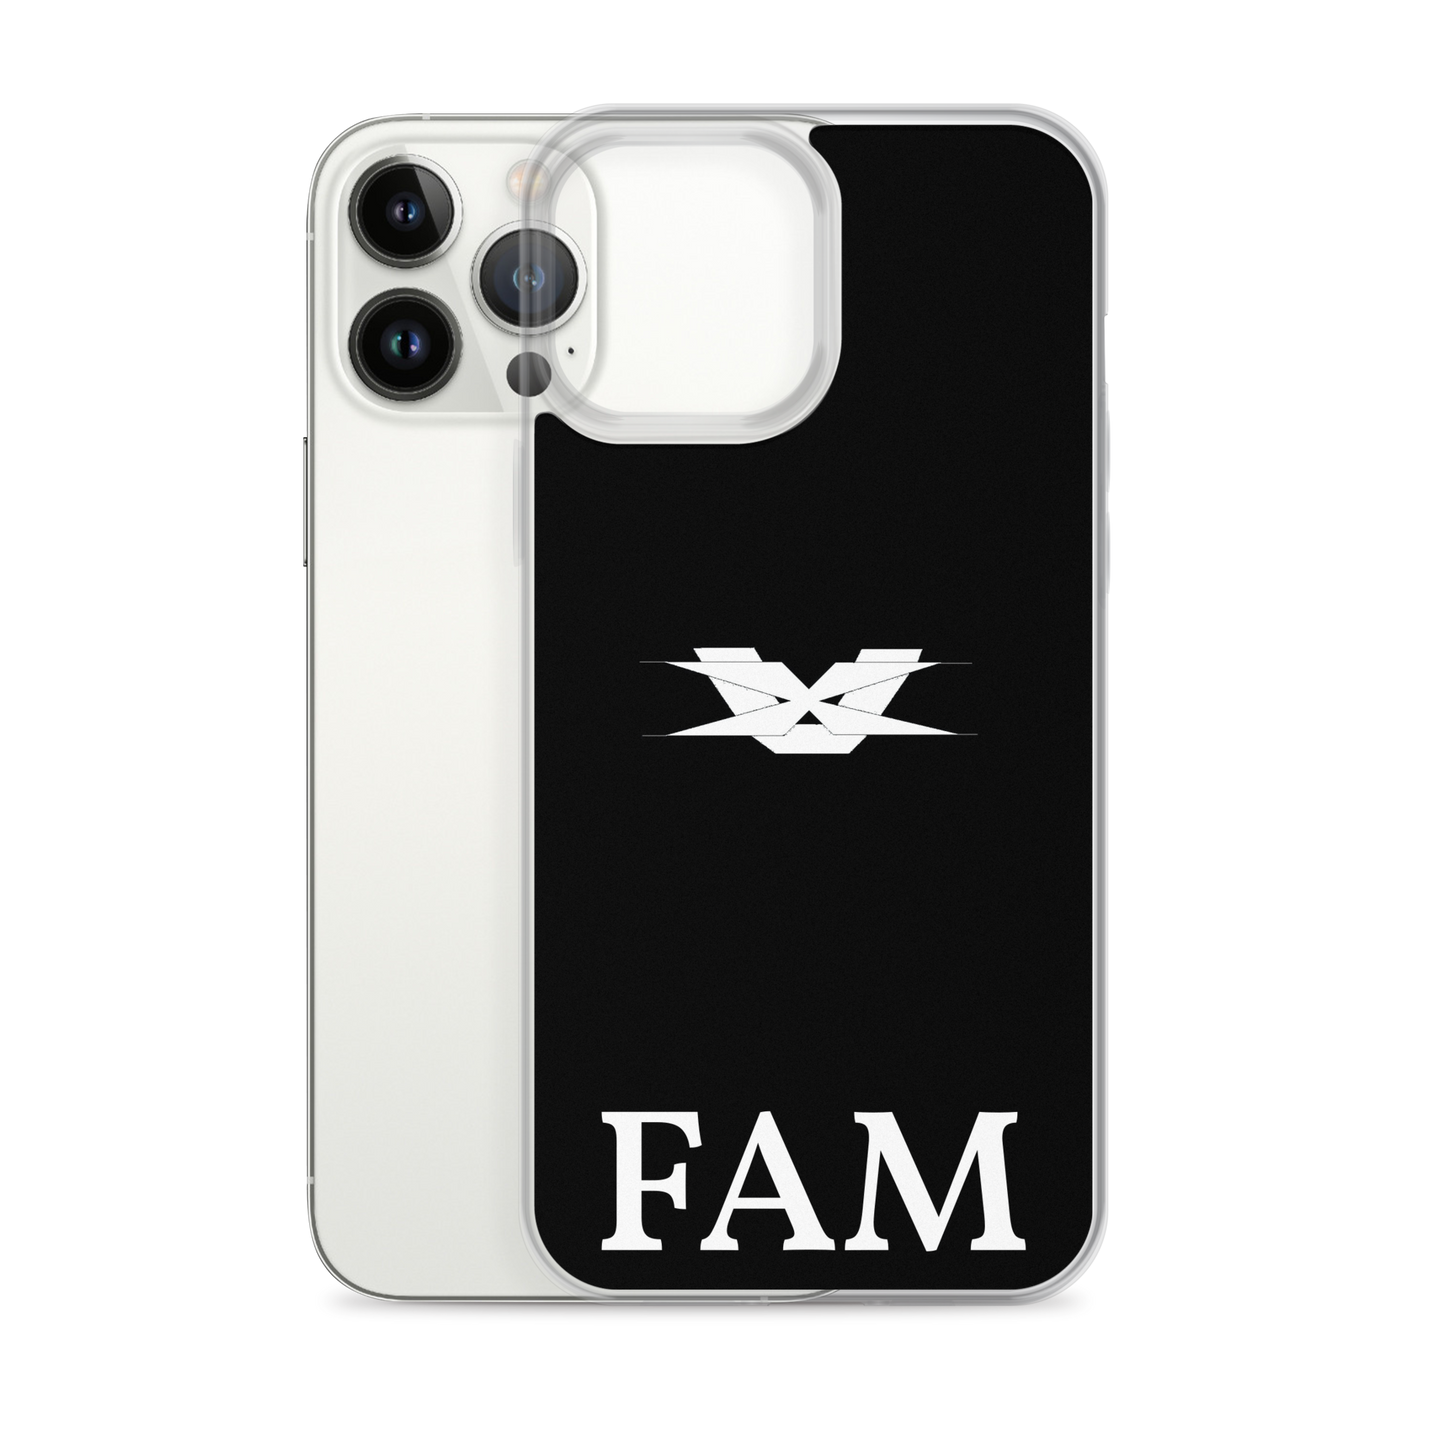 FAM iPhone Case